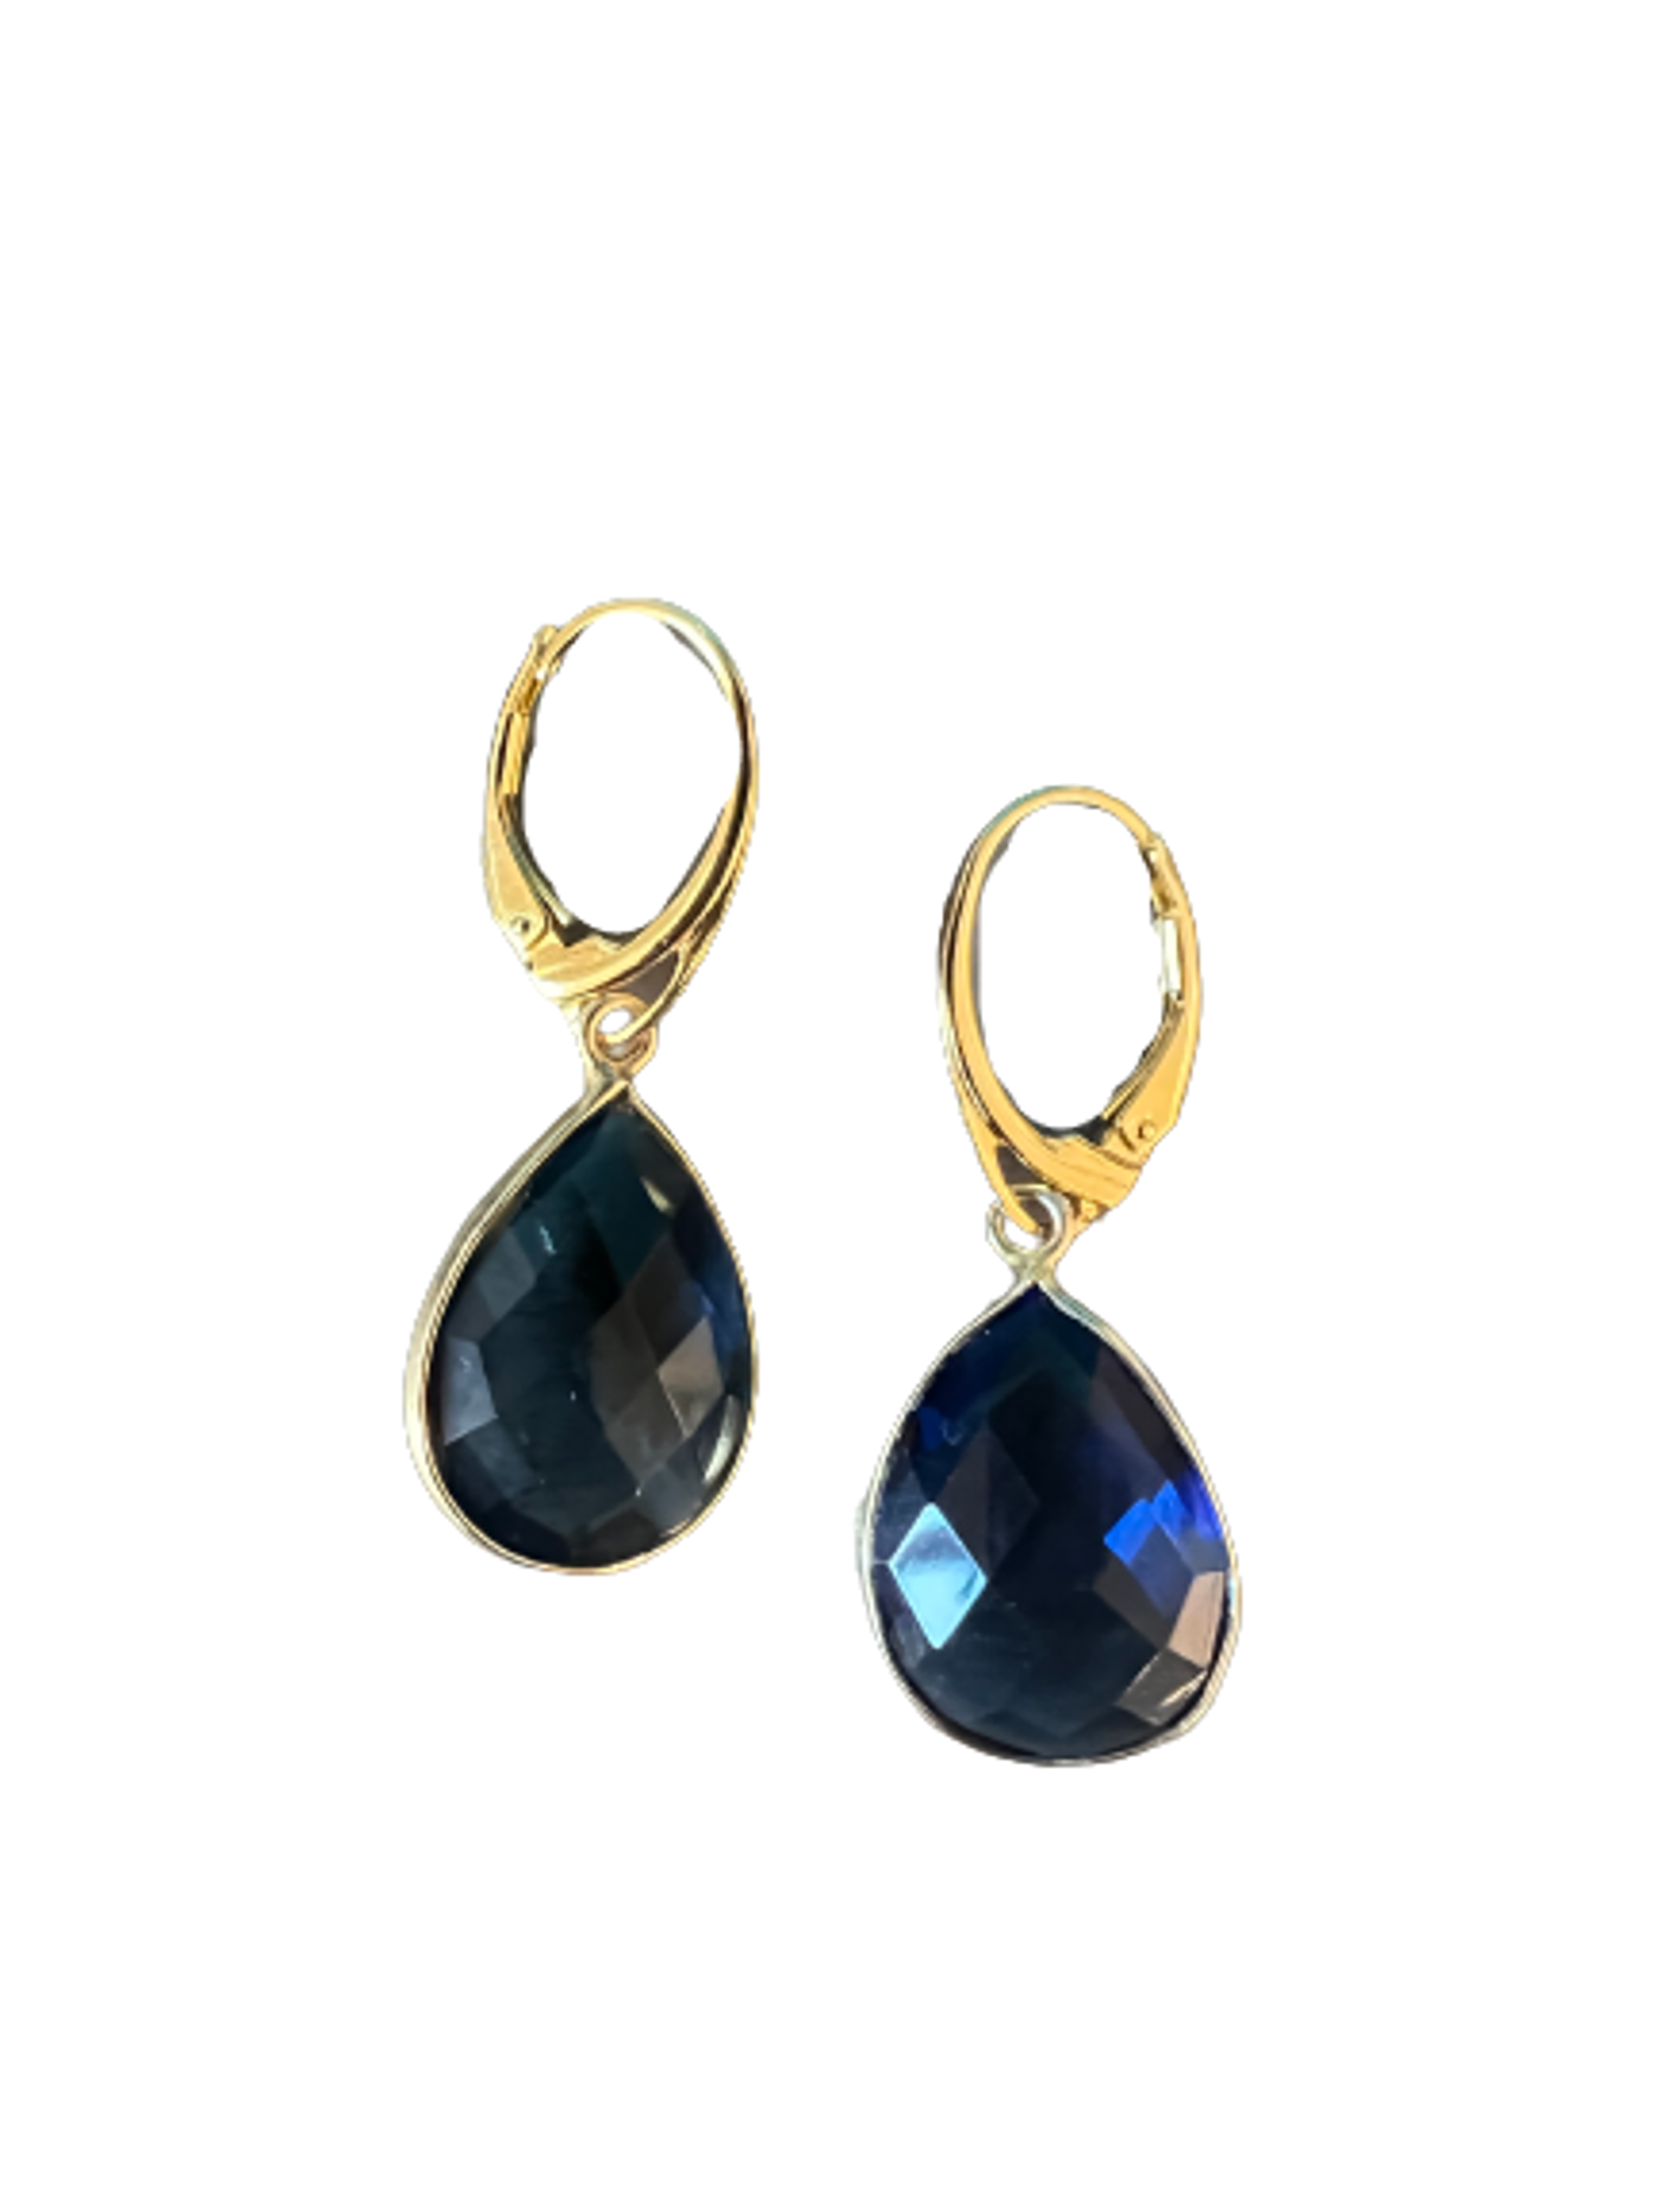 Gold Vermeil and London Blue Topaz Teardrop Earrings with Lever Backs by Karen Birchmier